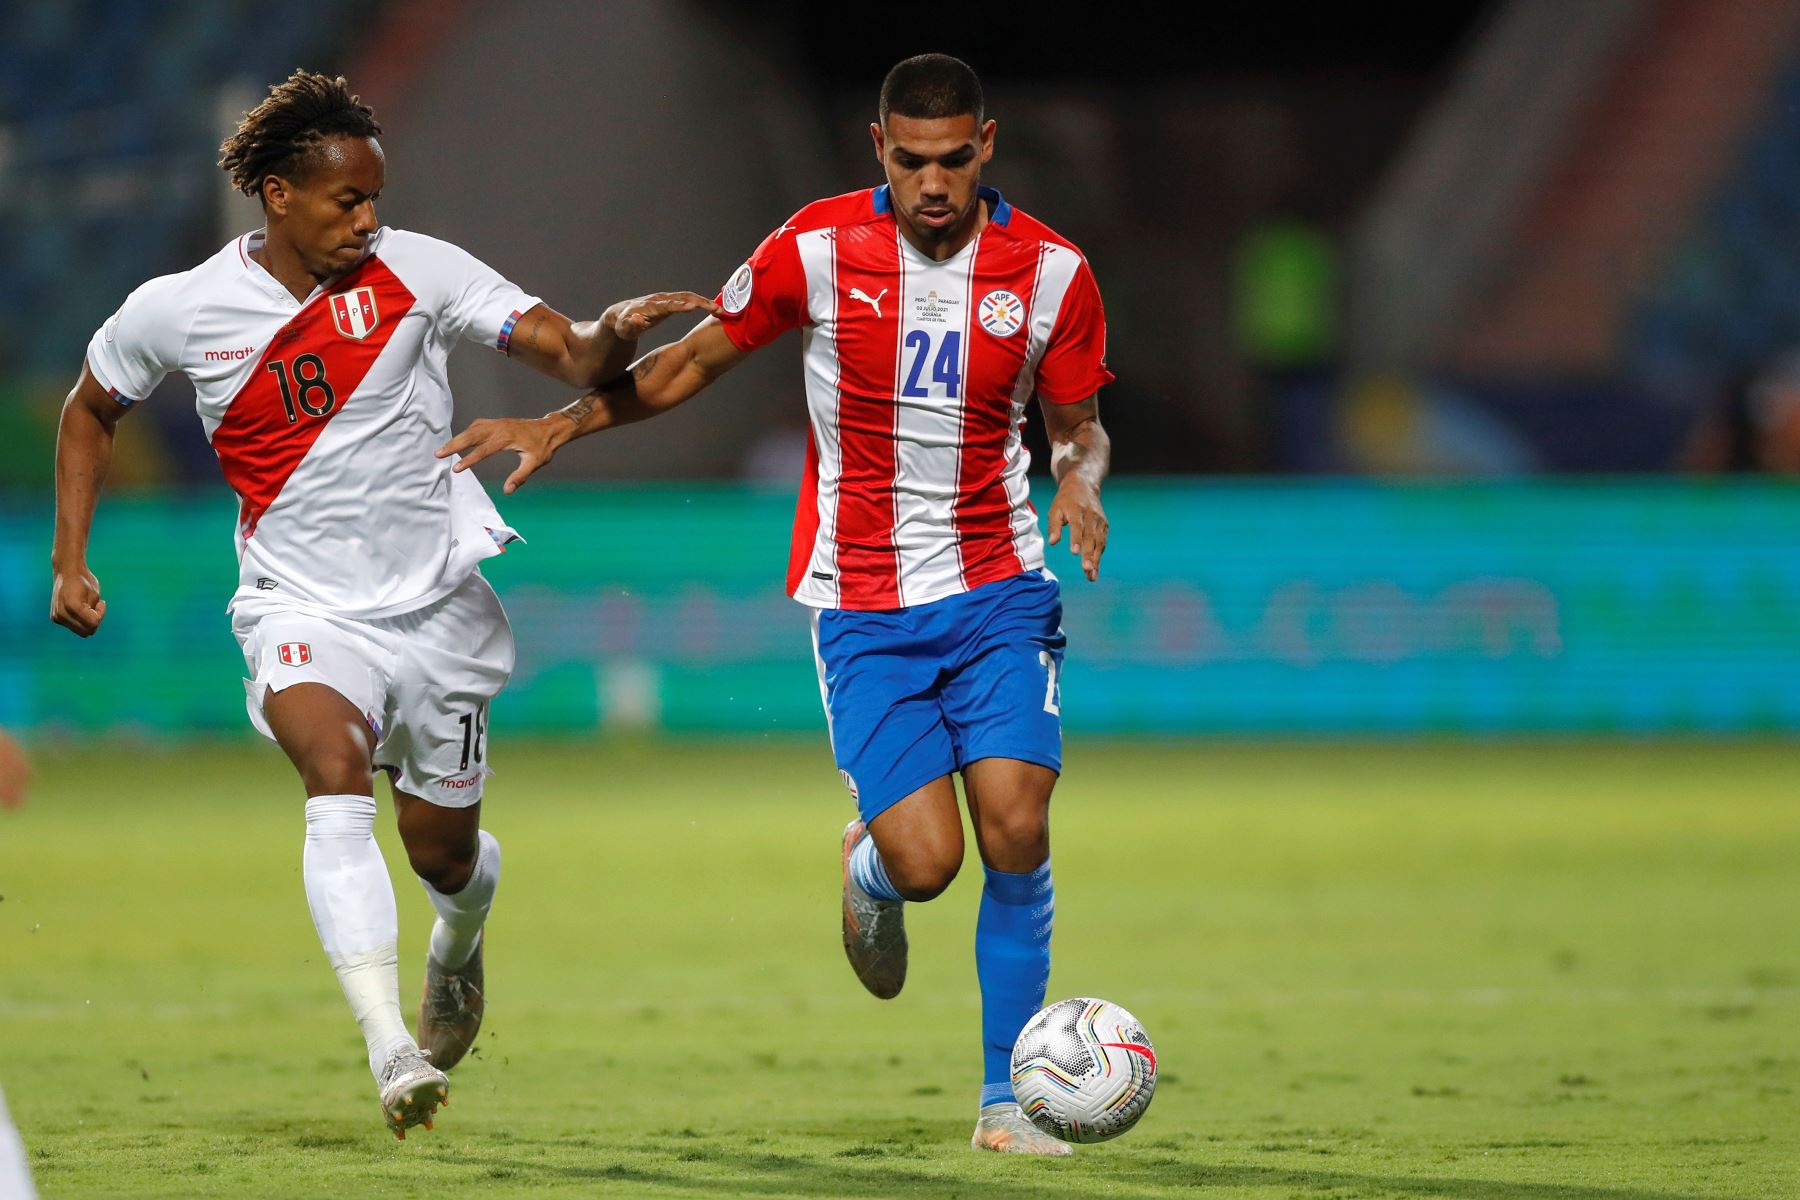 André Carrillo de Perú disputa un balón con Héctor Martínez de Paraguay durante partido de los cuartos de final de la Copa América, en el Estadio Olímpico de Goiania, Brasil. Foto: EFE